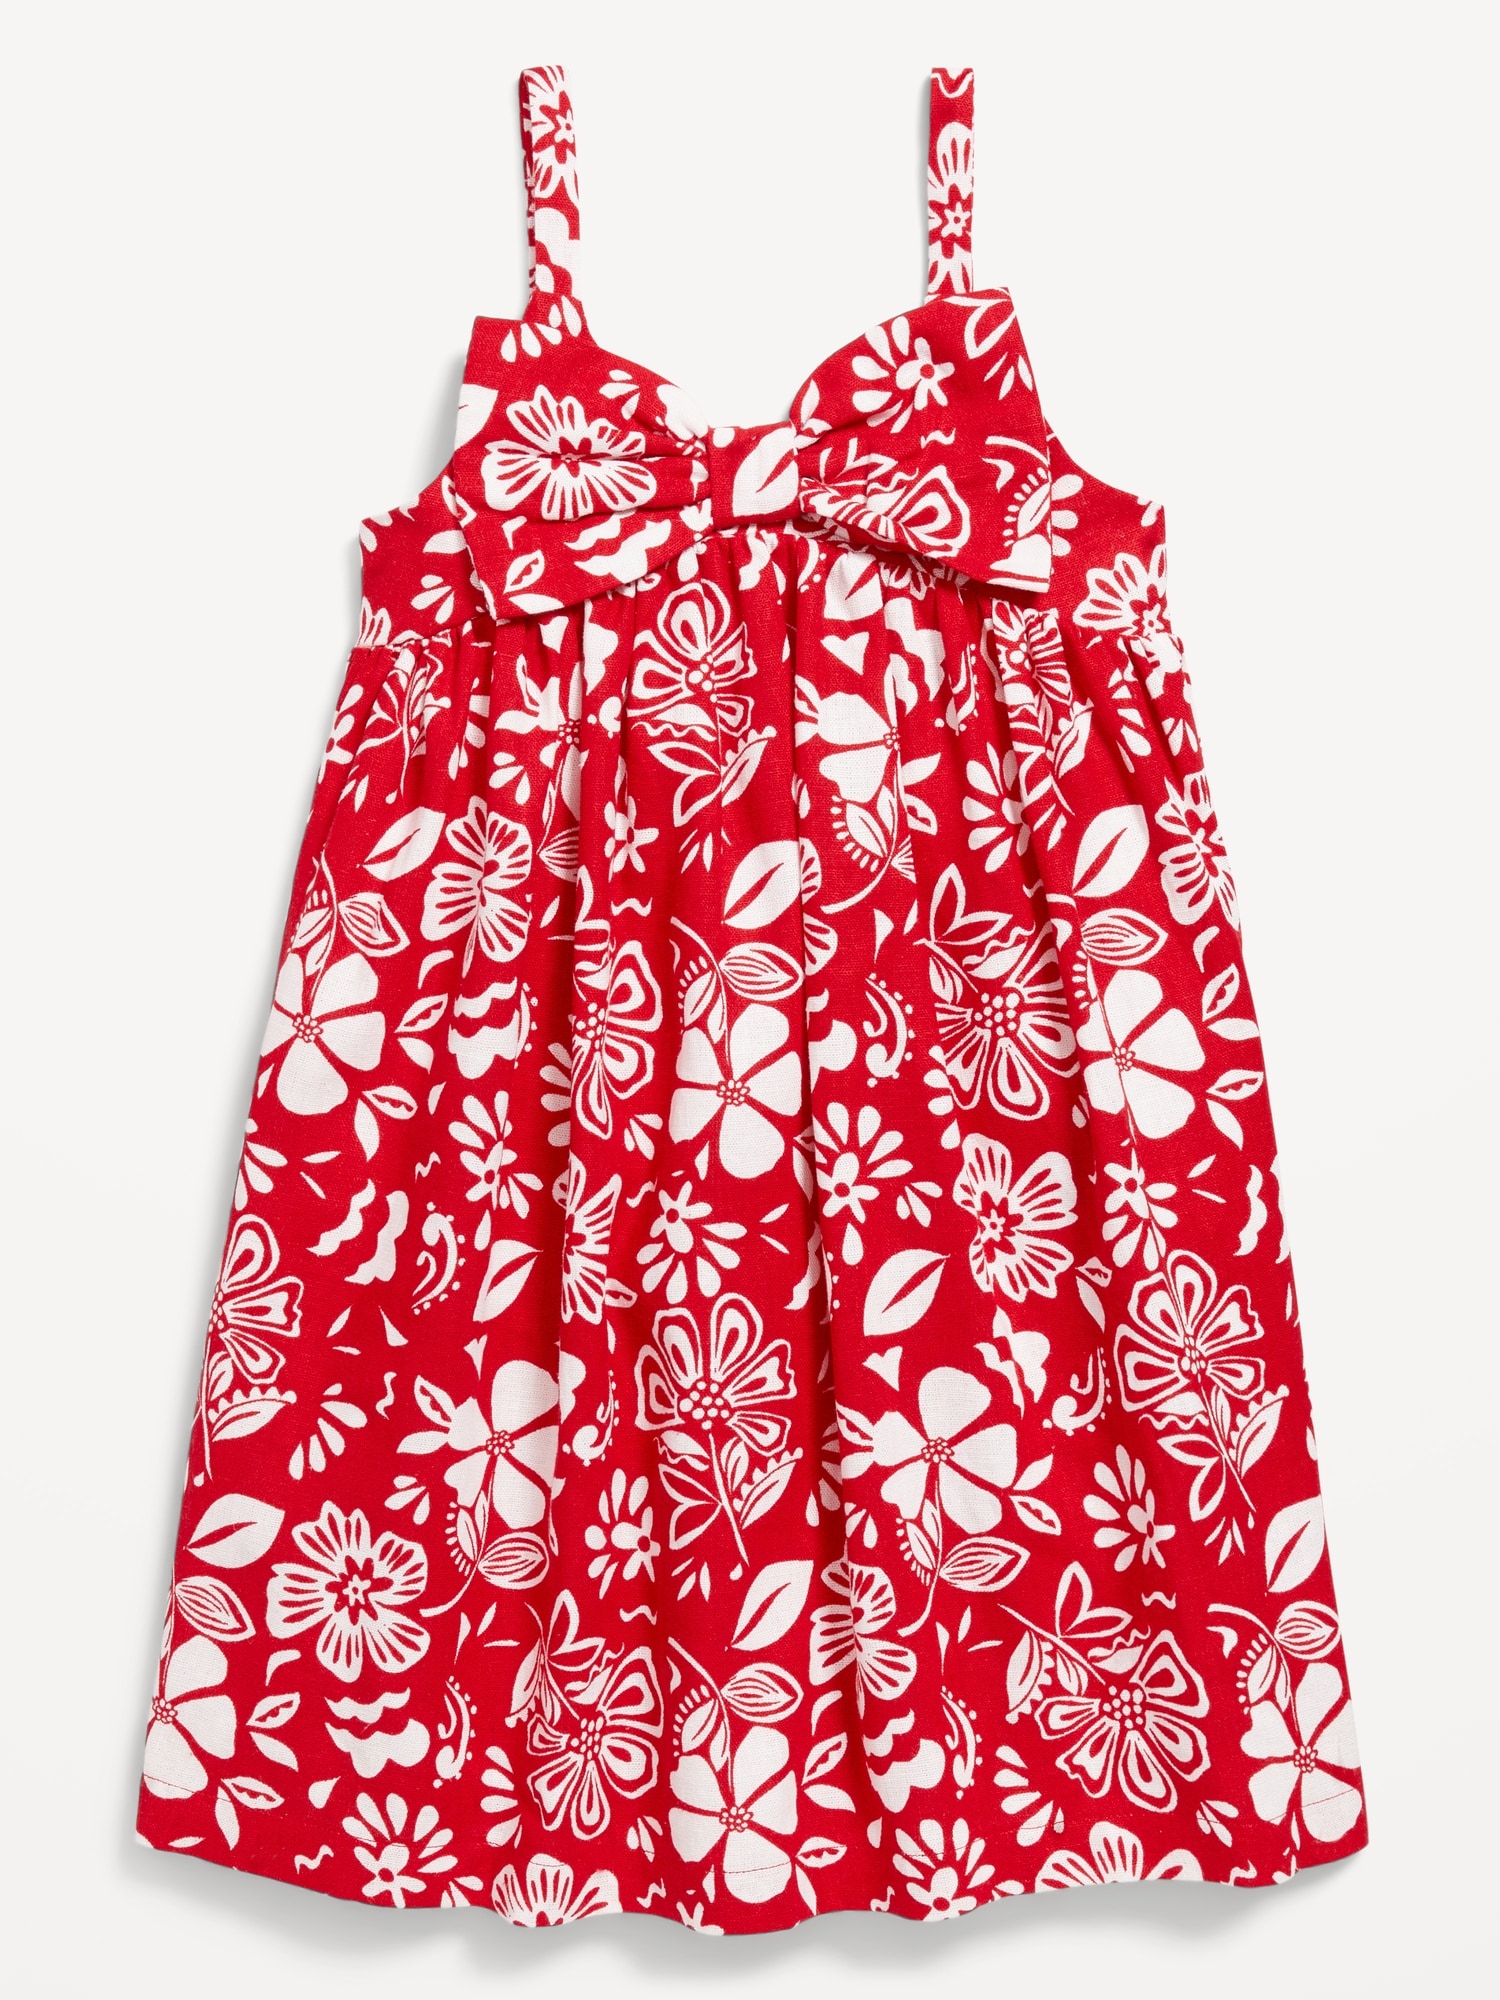 Sleeveless Bow-Tie Dress for Toddler Girls